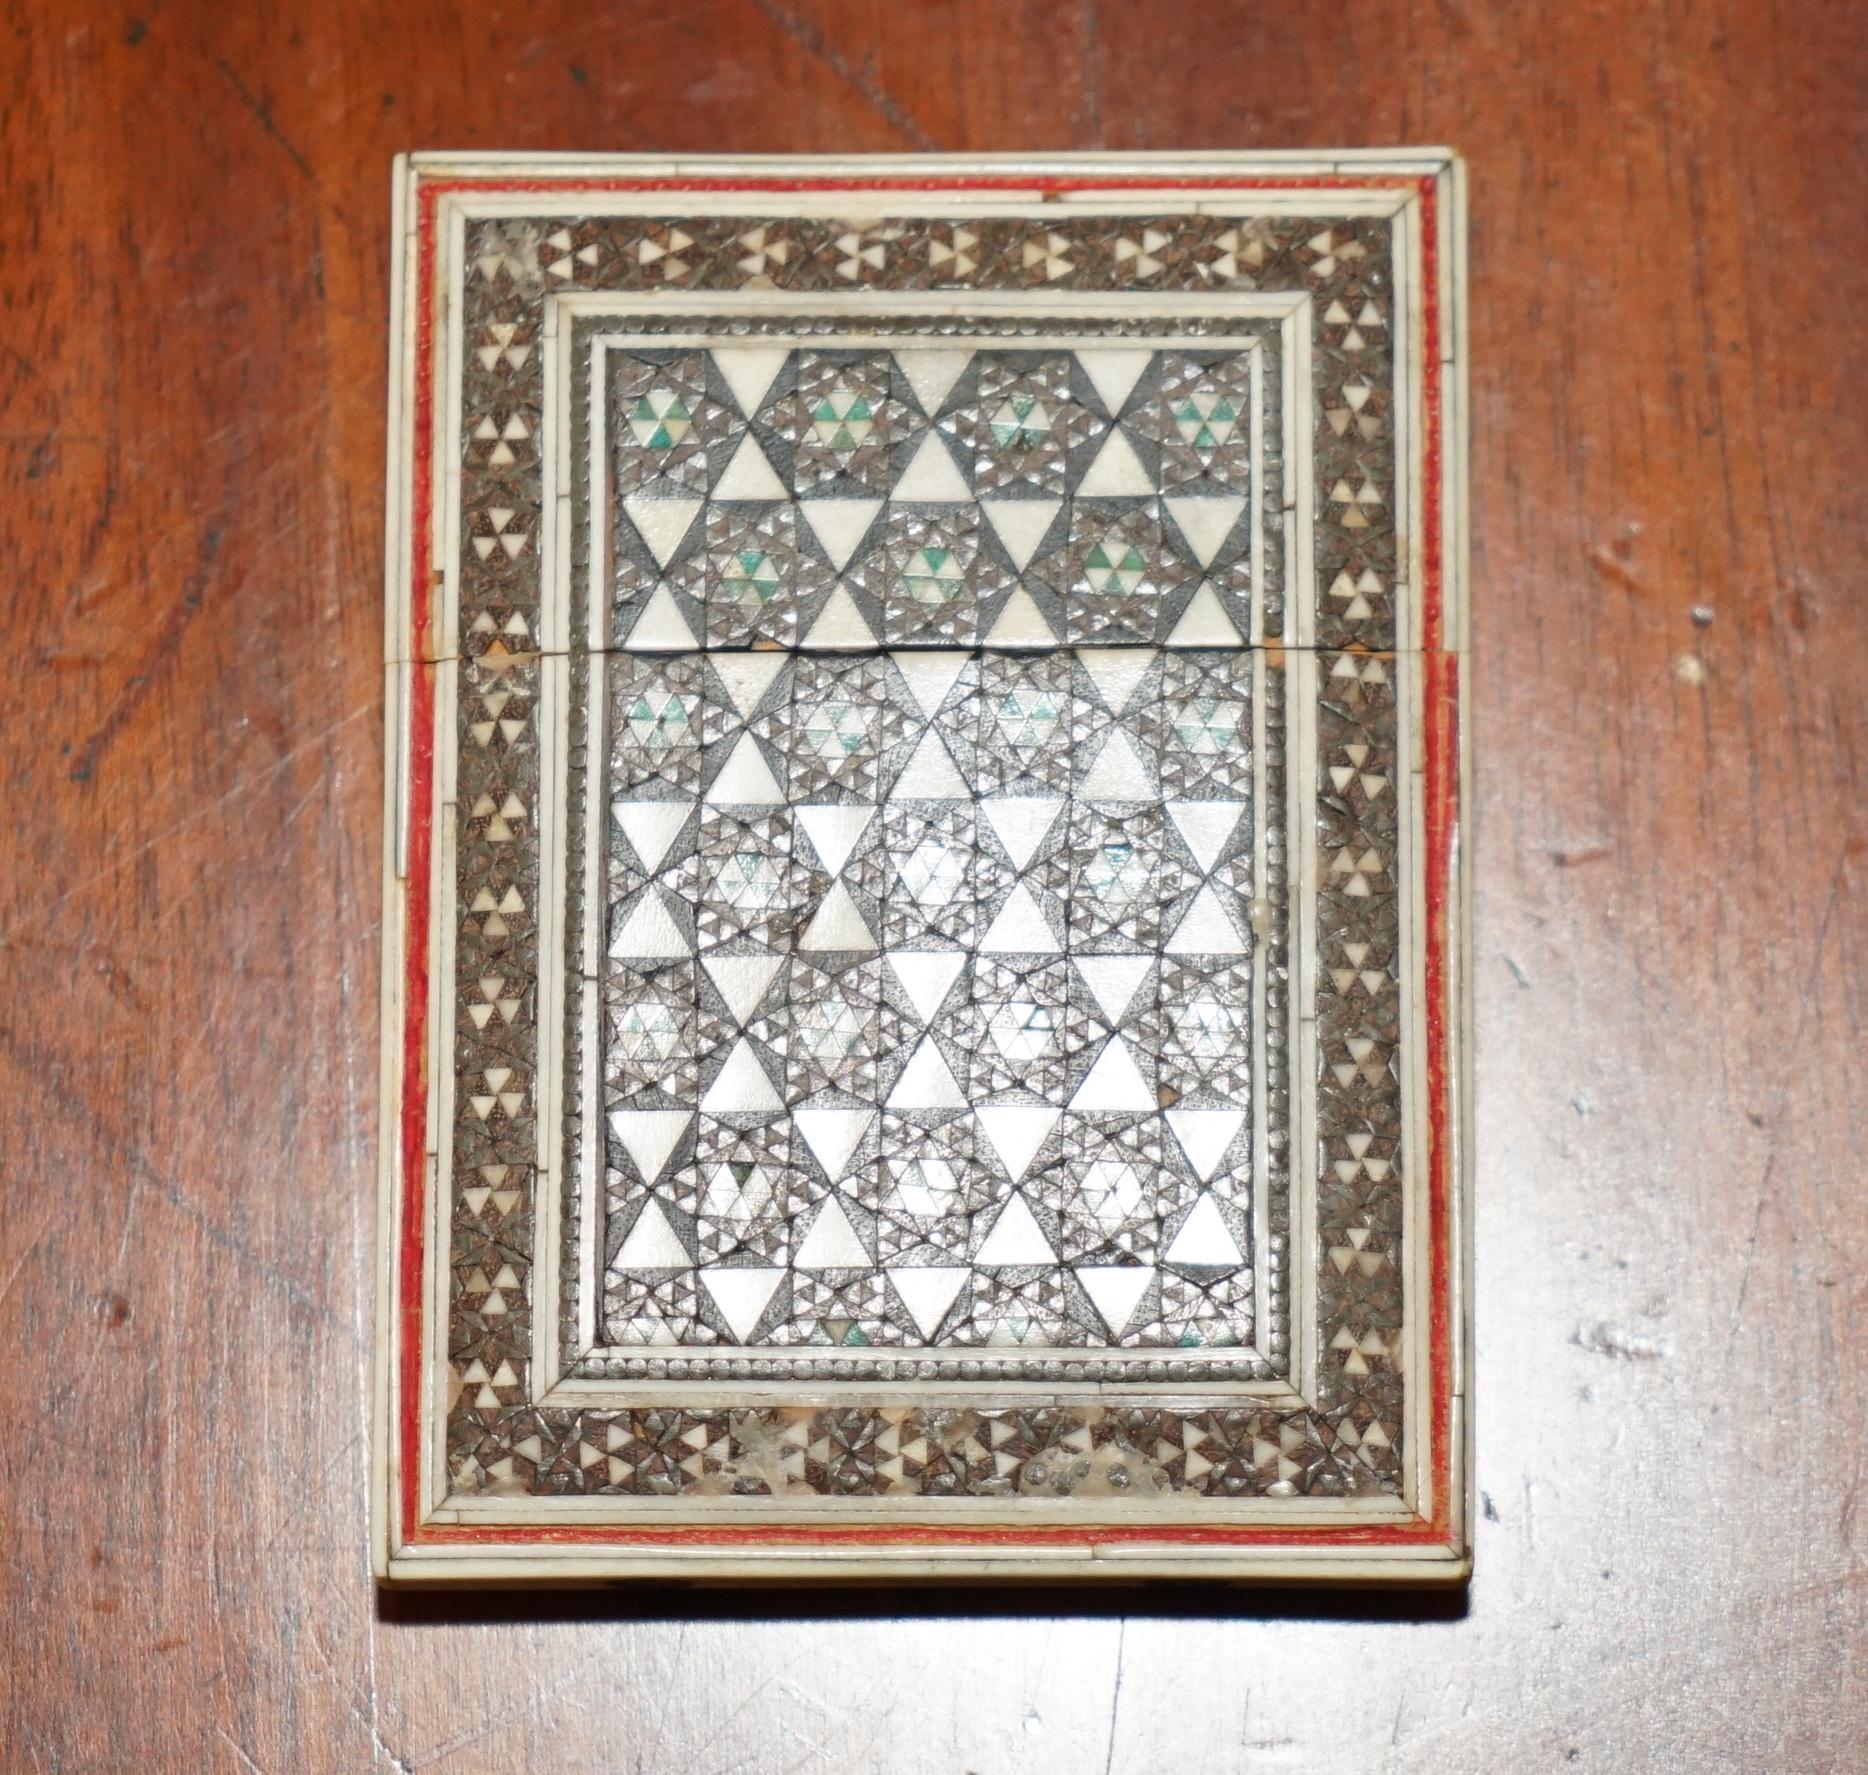 Royal House Antiques

Royal House Antiques freut sich, dieses schöne, sehr dekorative antike islamisch-anglo-indische Sadeli-Mikro-Mosaik-Kartenetui zum Verkauf anzubieten.

Ein wunderbarer Originalfund, es handelt sich nicht um eine der viel